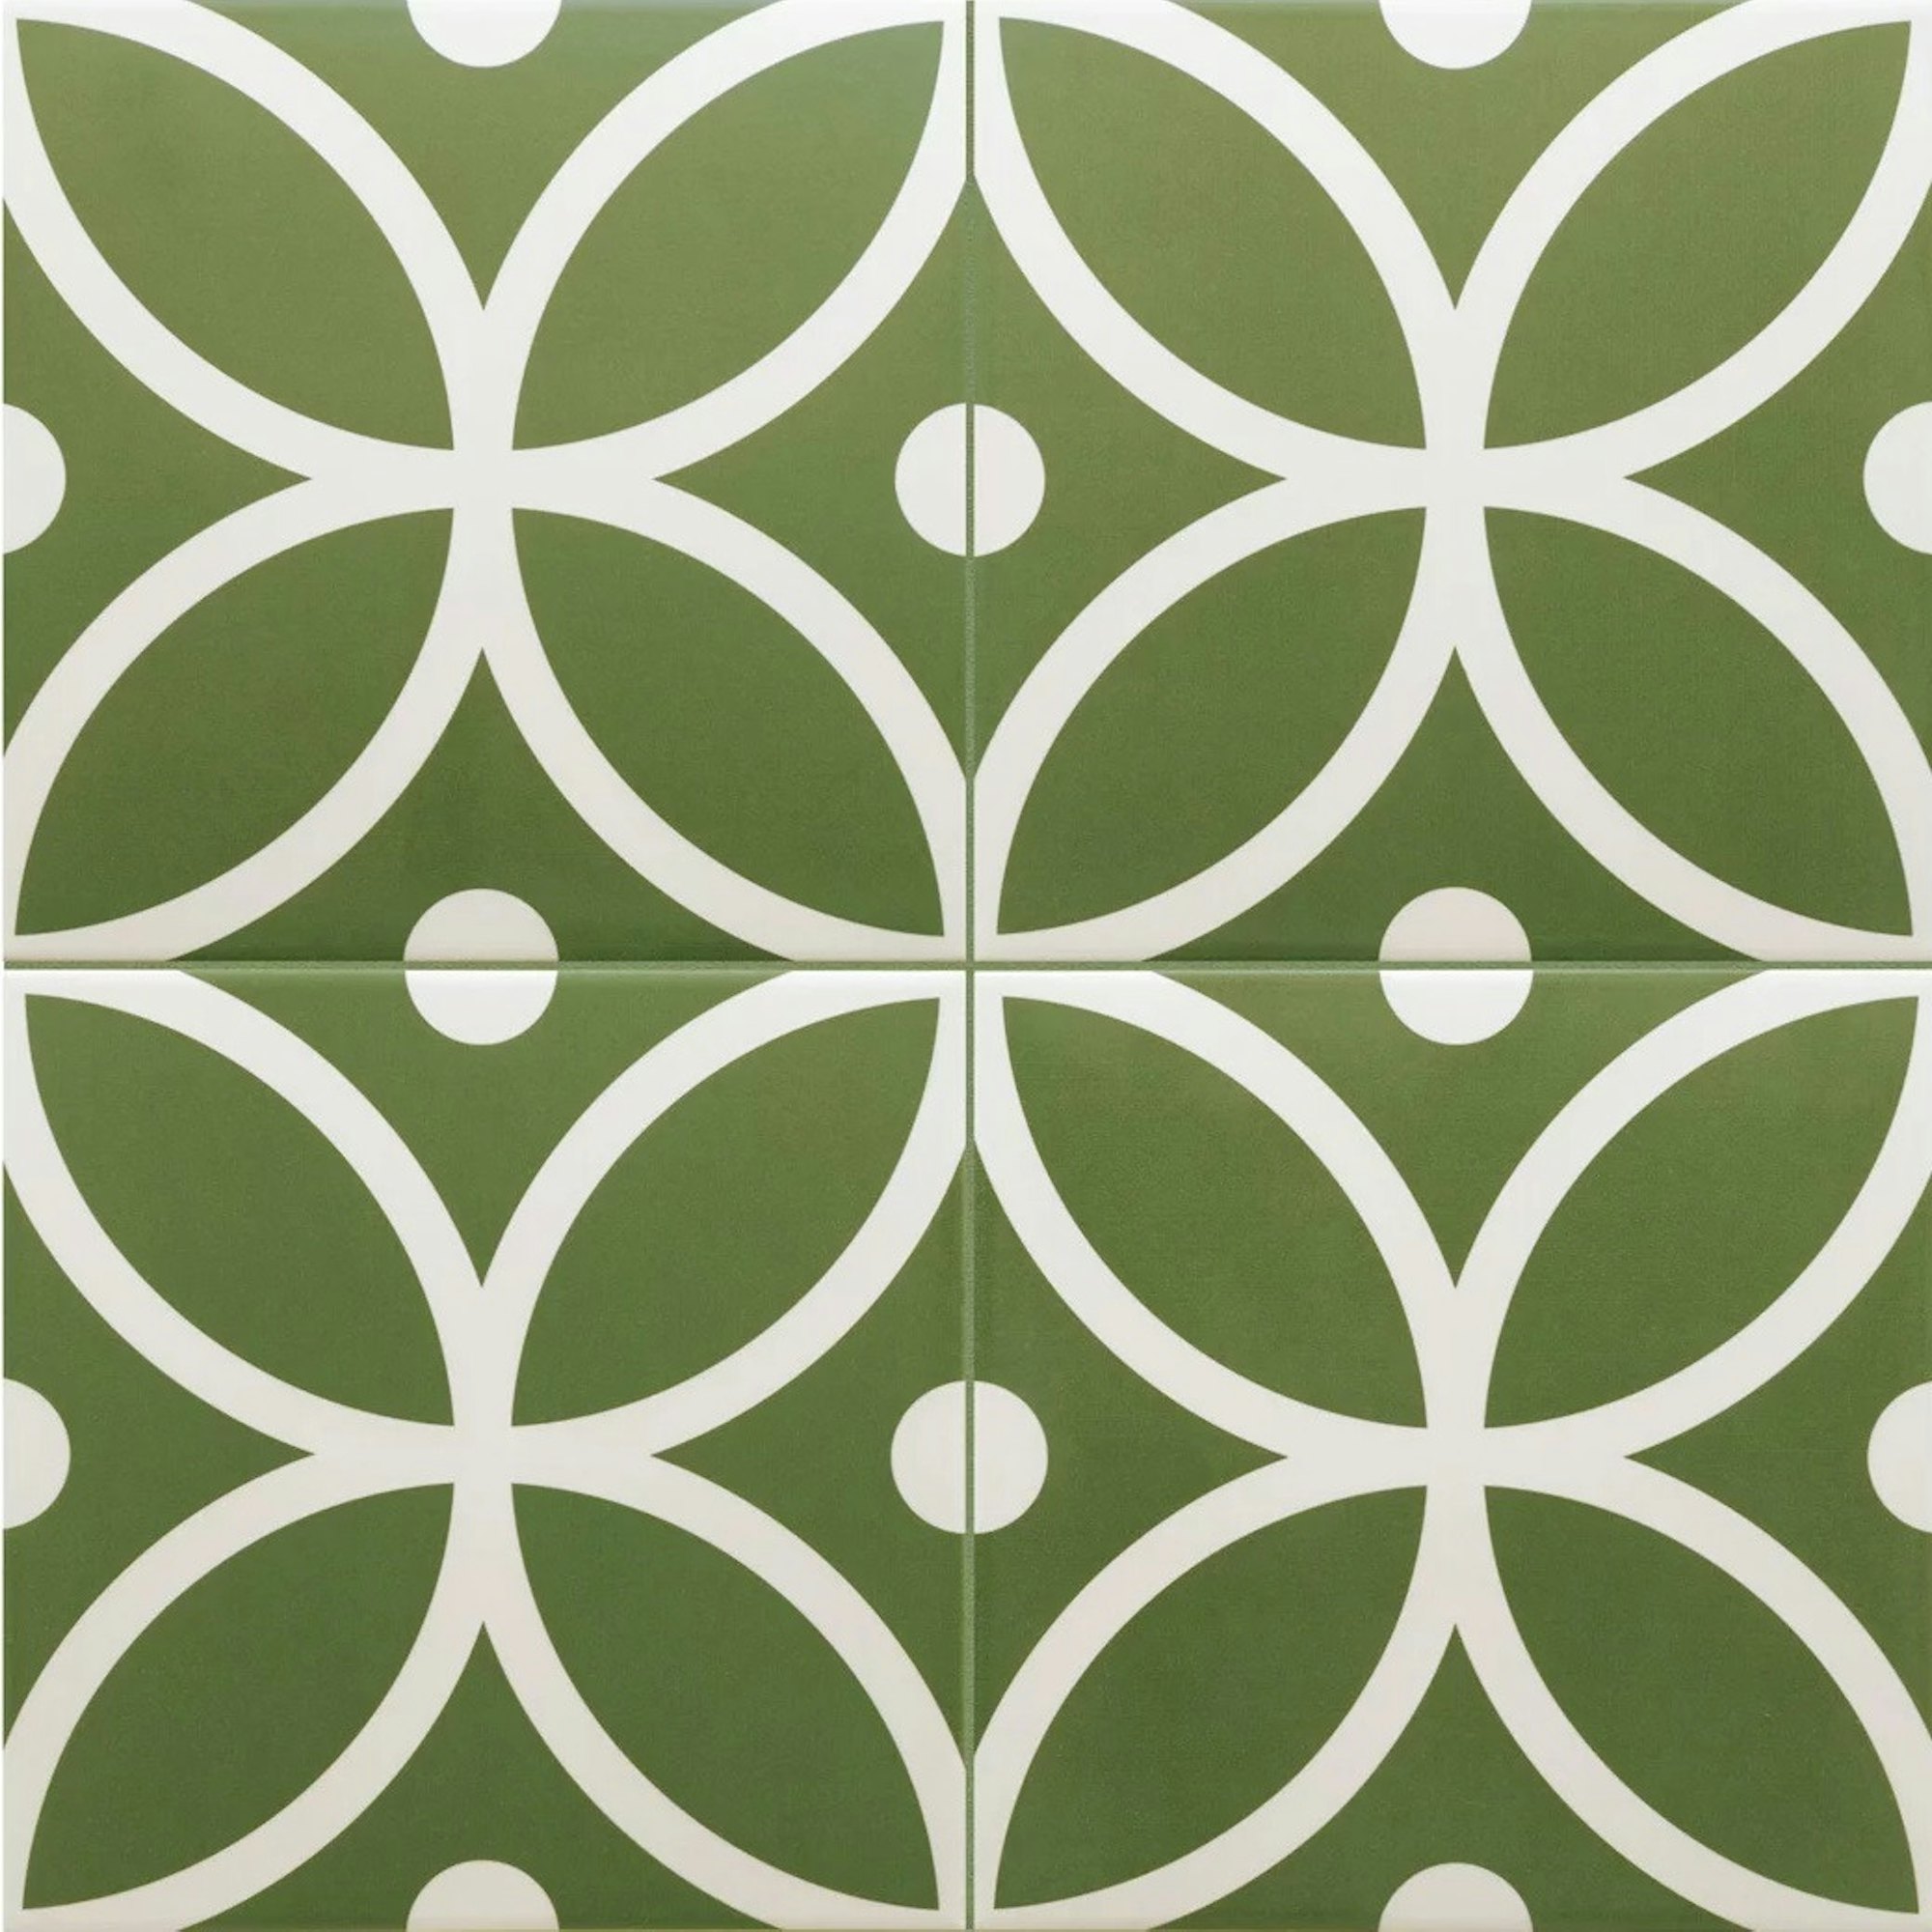 Middleham Hetton Verde Patterned Tile